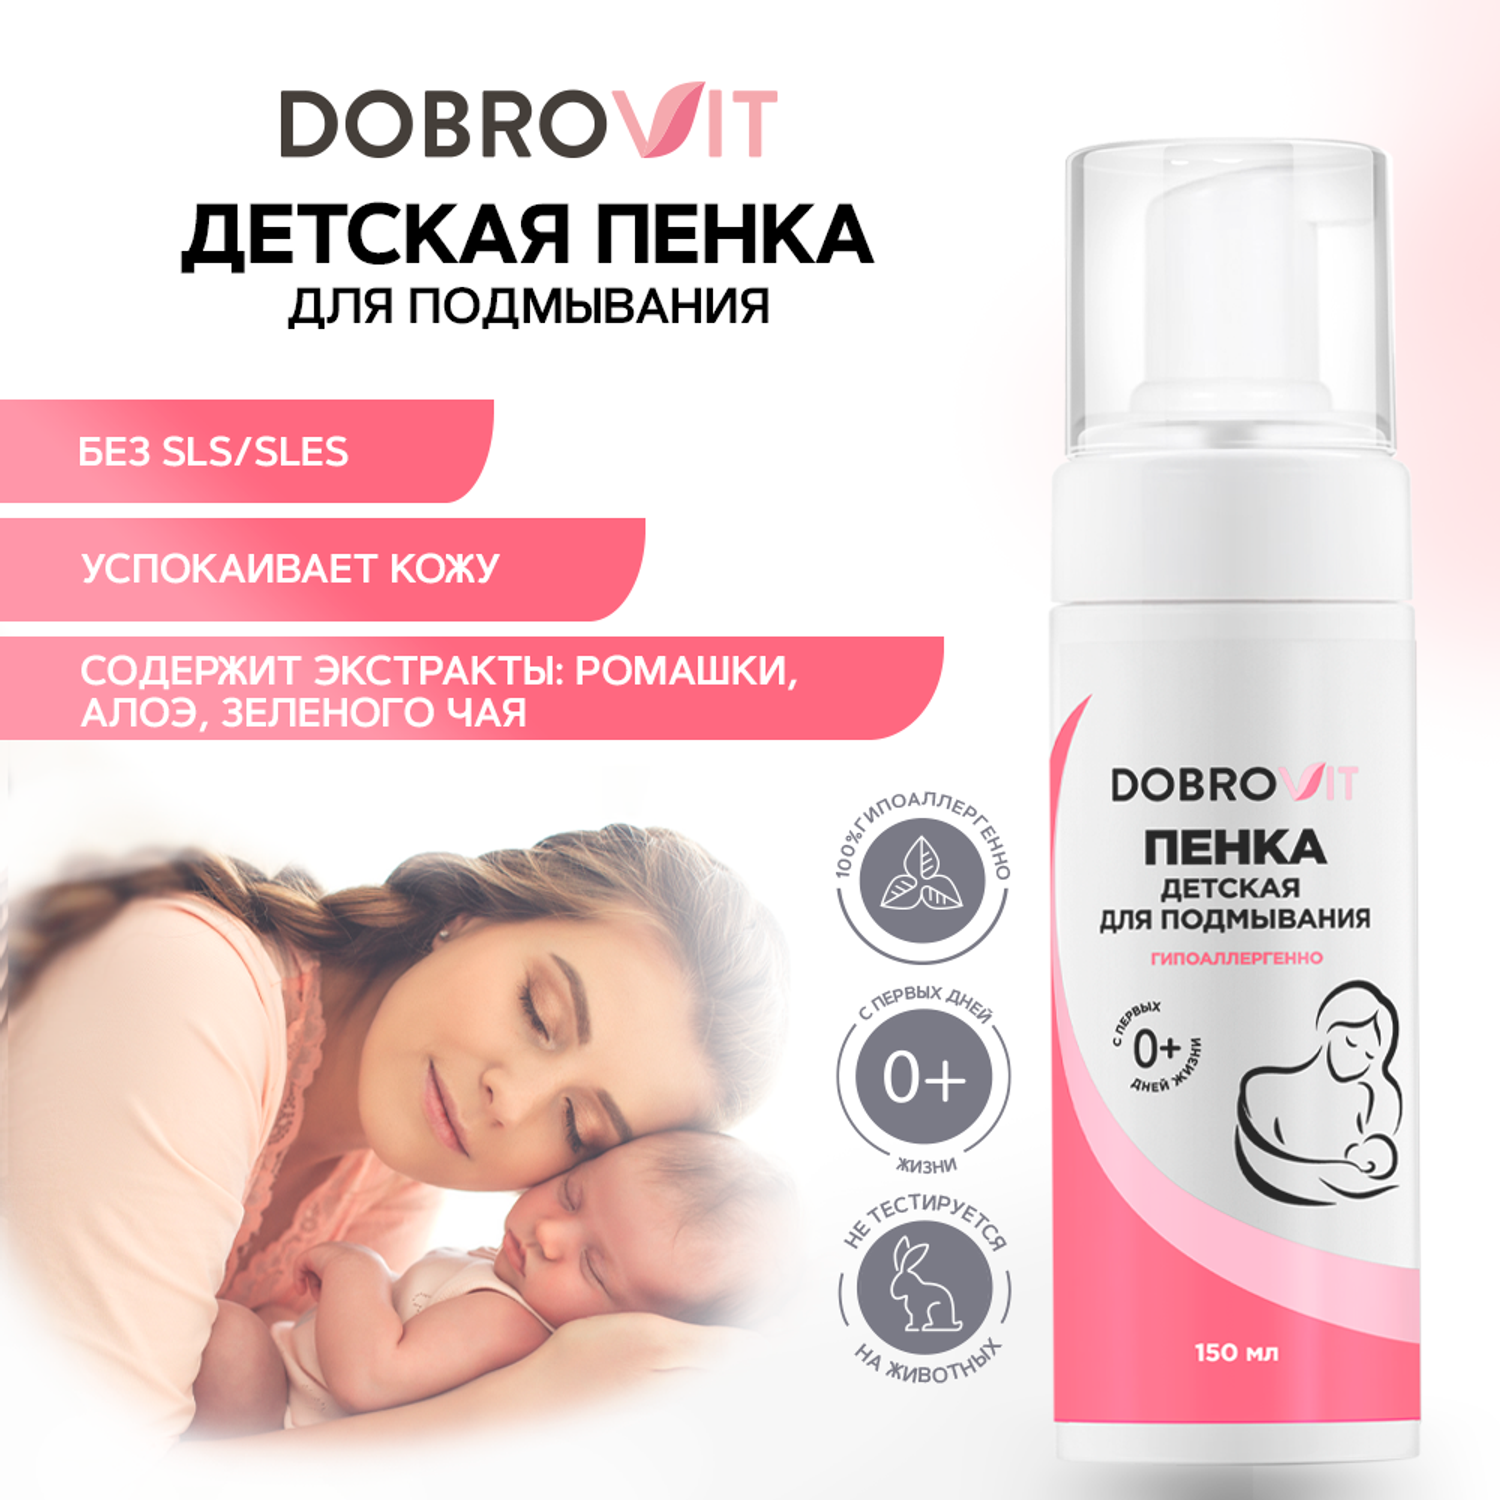 Пенка для подмывания DOBROVIT детская для интимной гигиены с ромашкой и алоэ 150 мл - фото 2